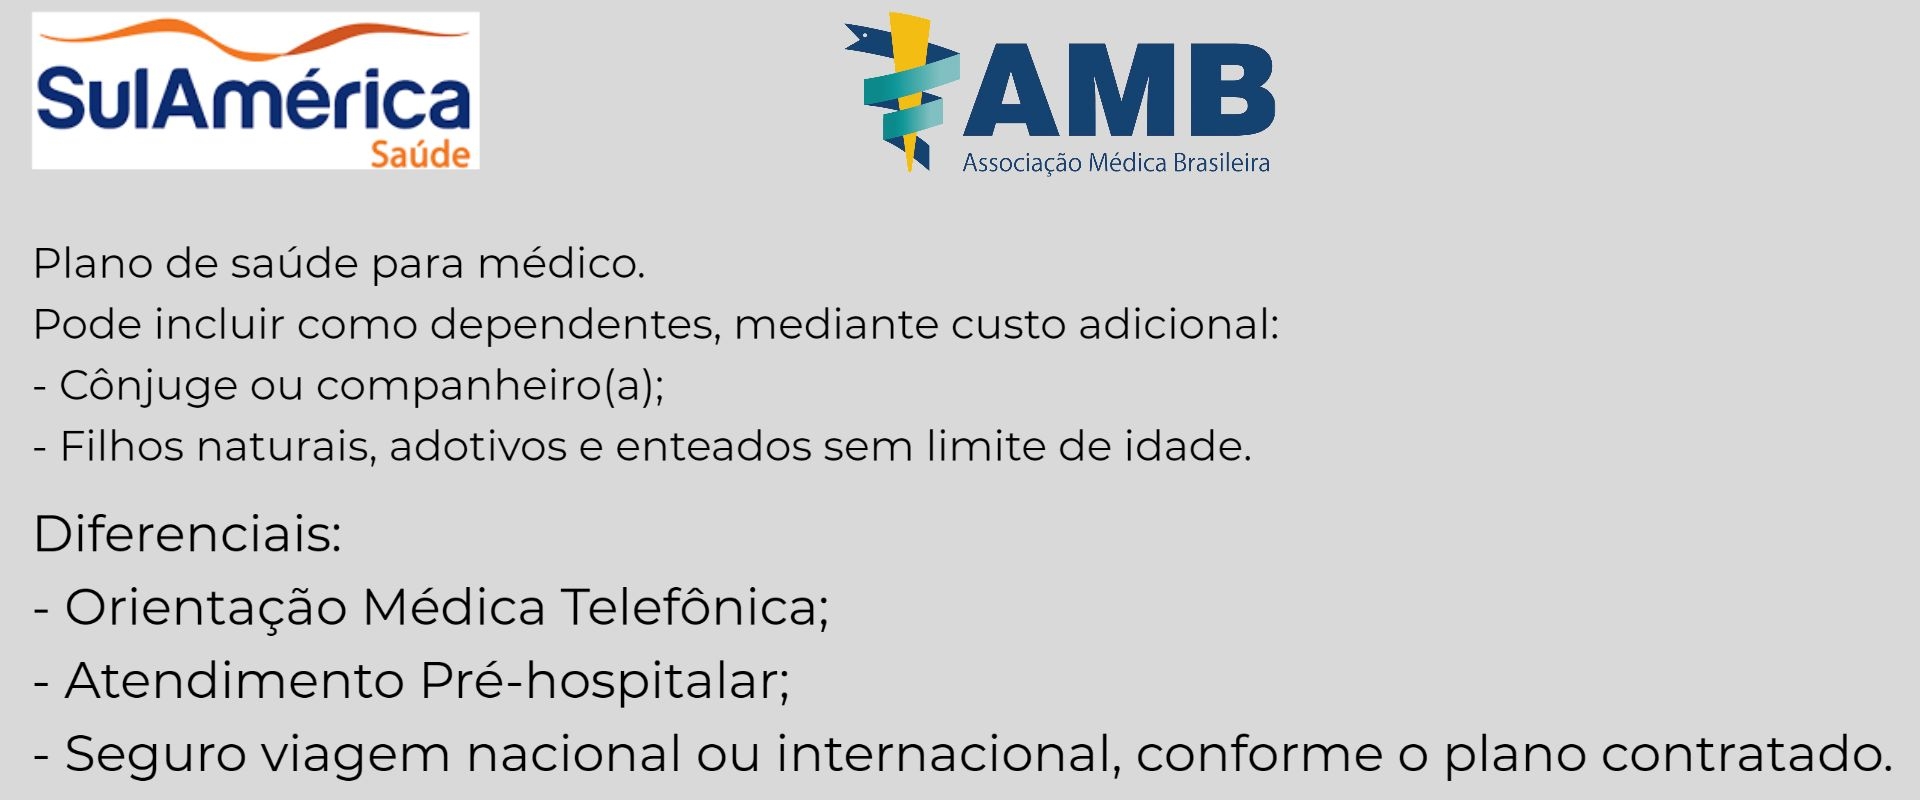 Sul América Saúde AMB-SE